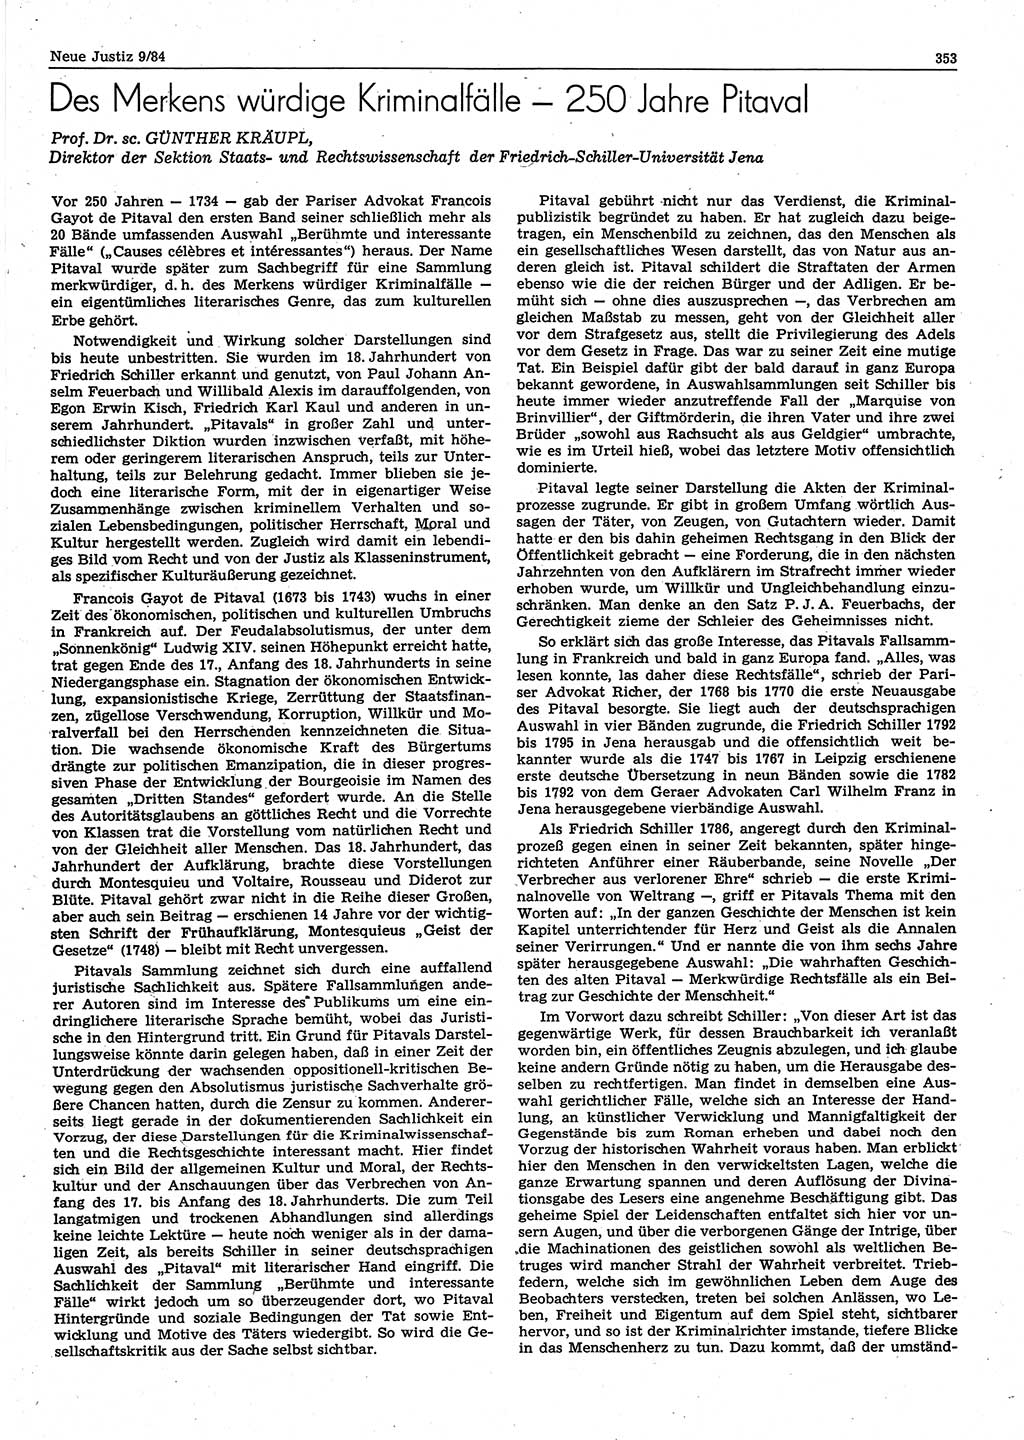 Neue Justiz (NJ), Zeitschrift für sozialistisches Recht und Gesetzlichkeit [Deutsche Demokratische Republik (DDR)], 38. Jahrgang 1984, Seite 353 (NJ DDR 1984, S. 353)